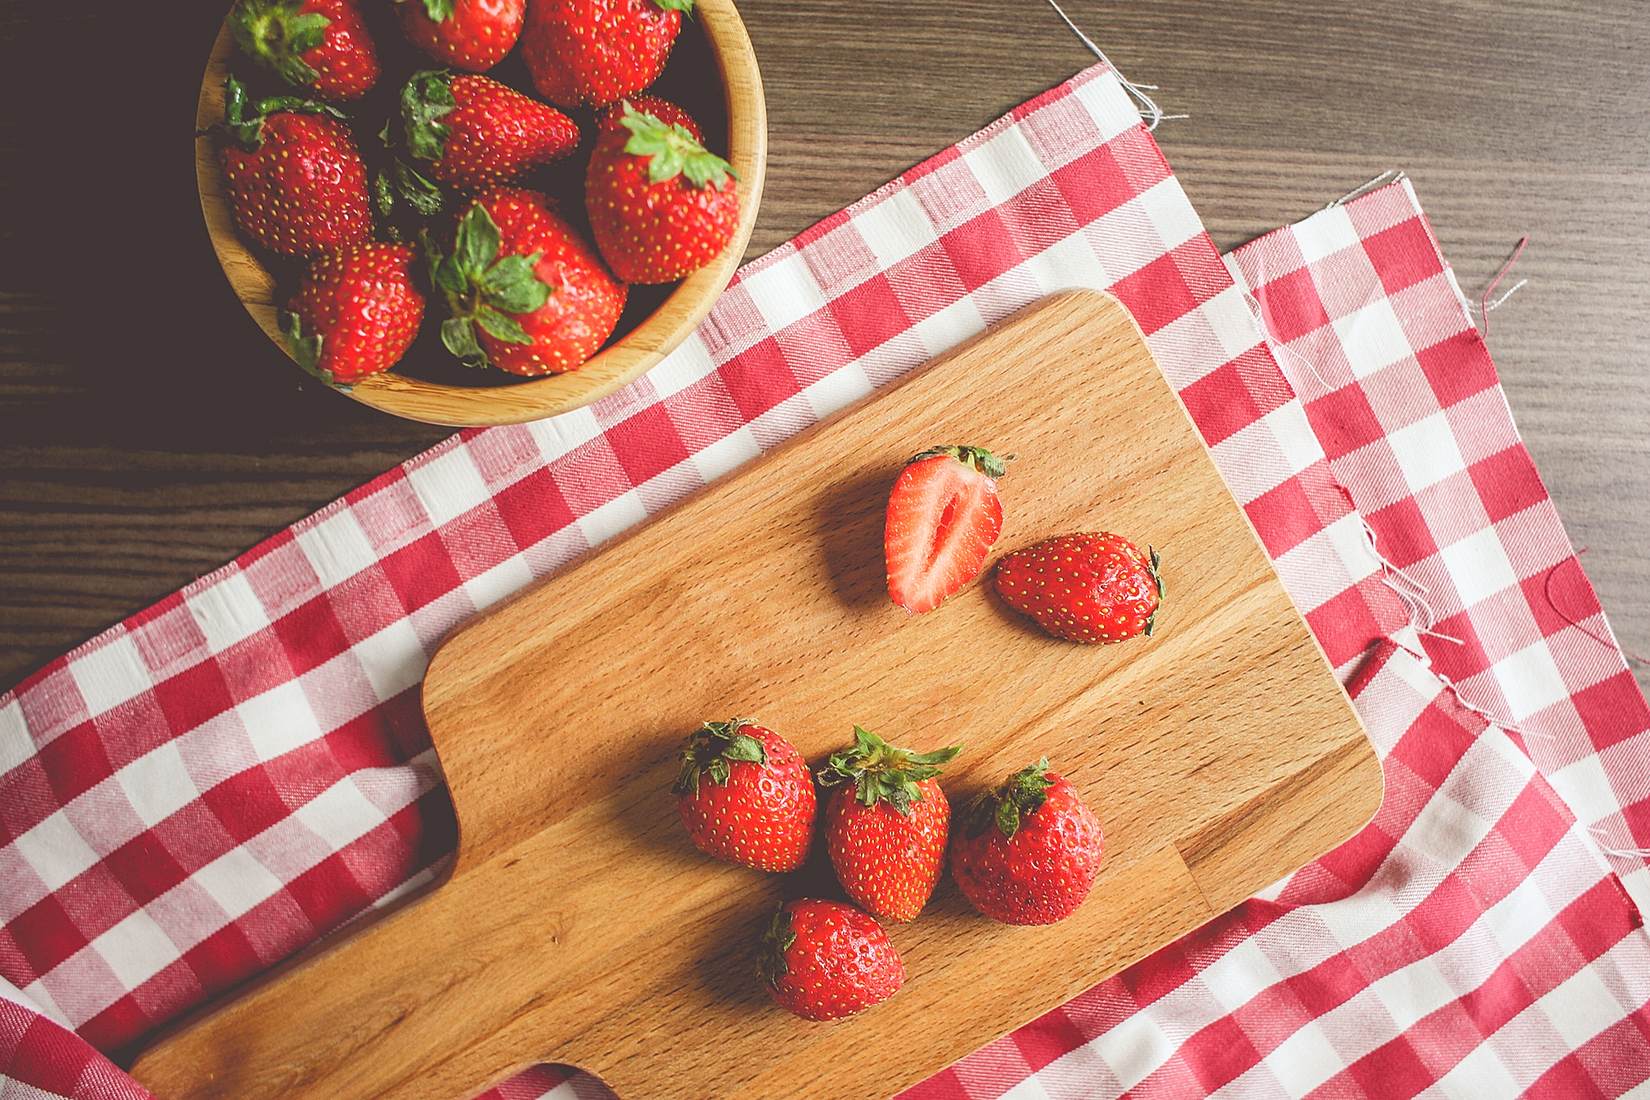 Fresh Strawberries Stock Photo